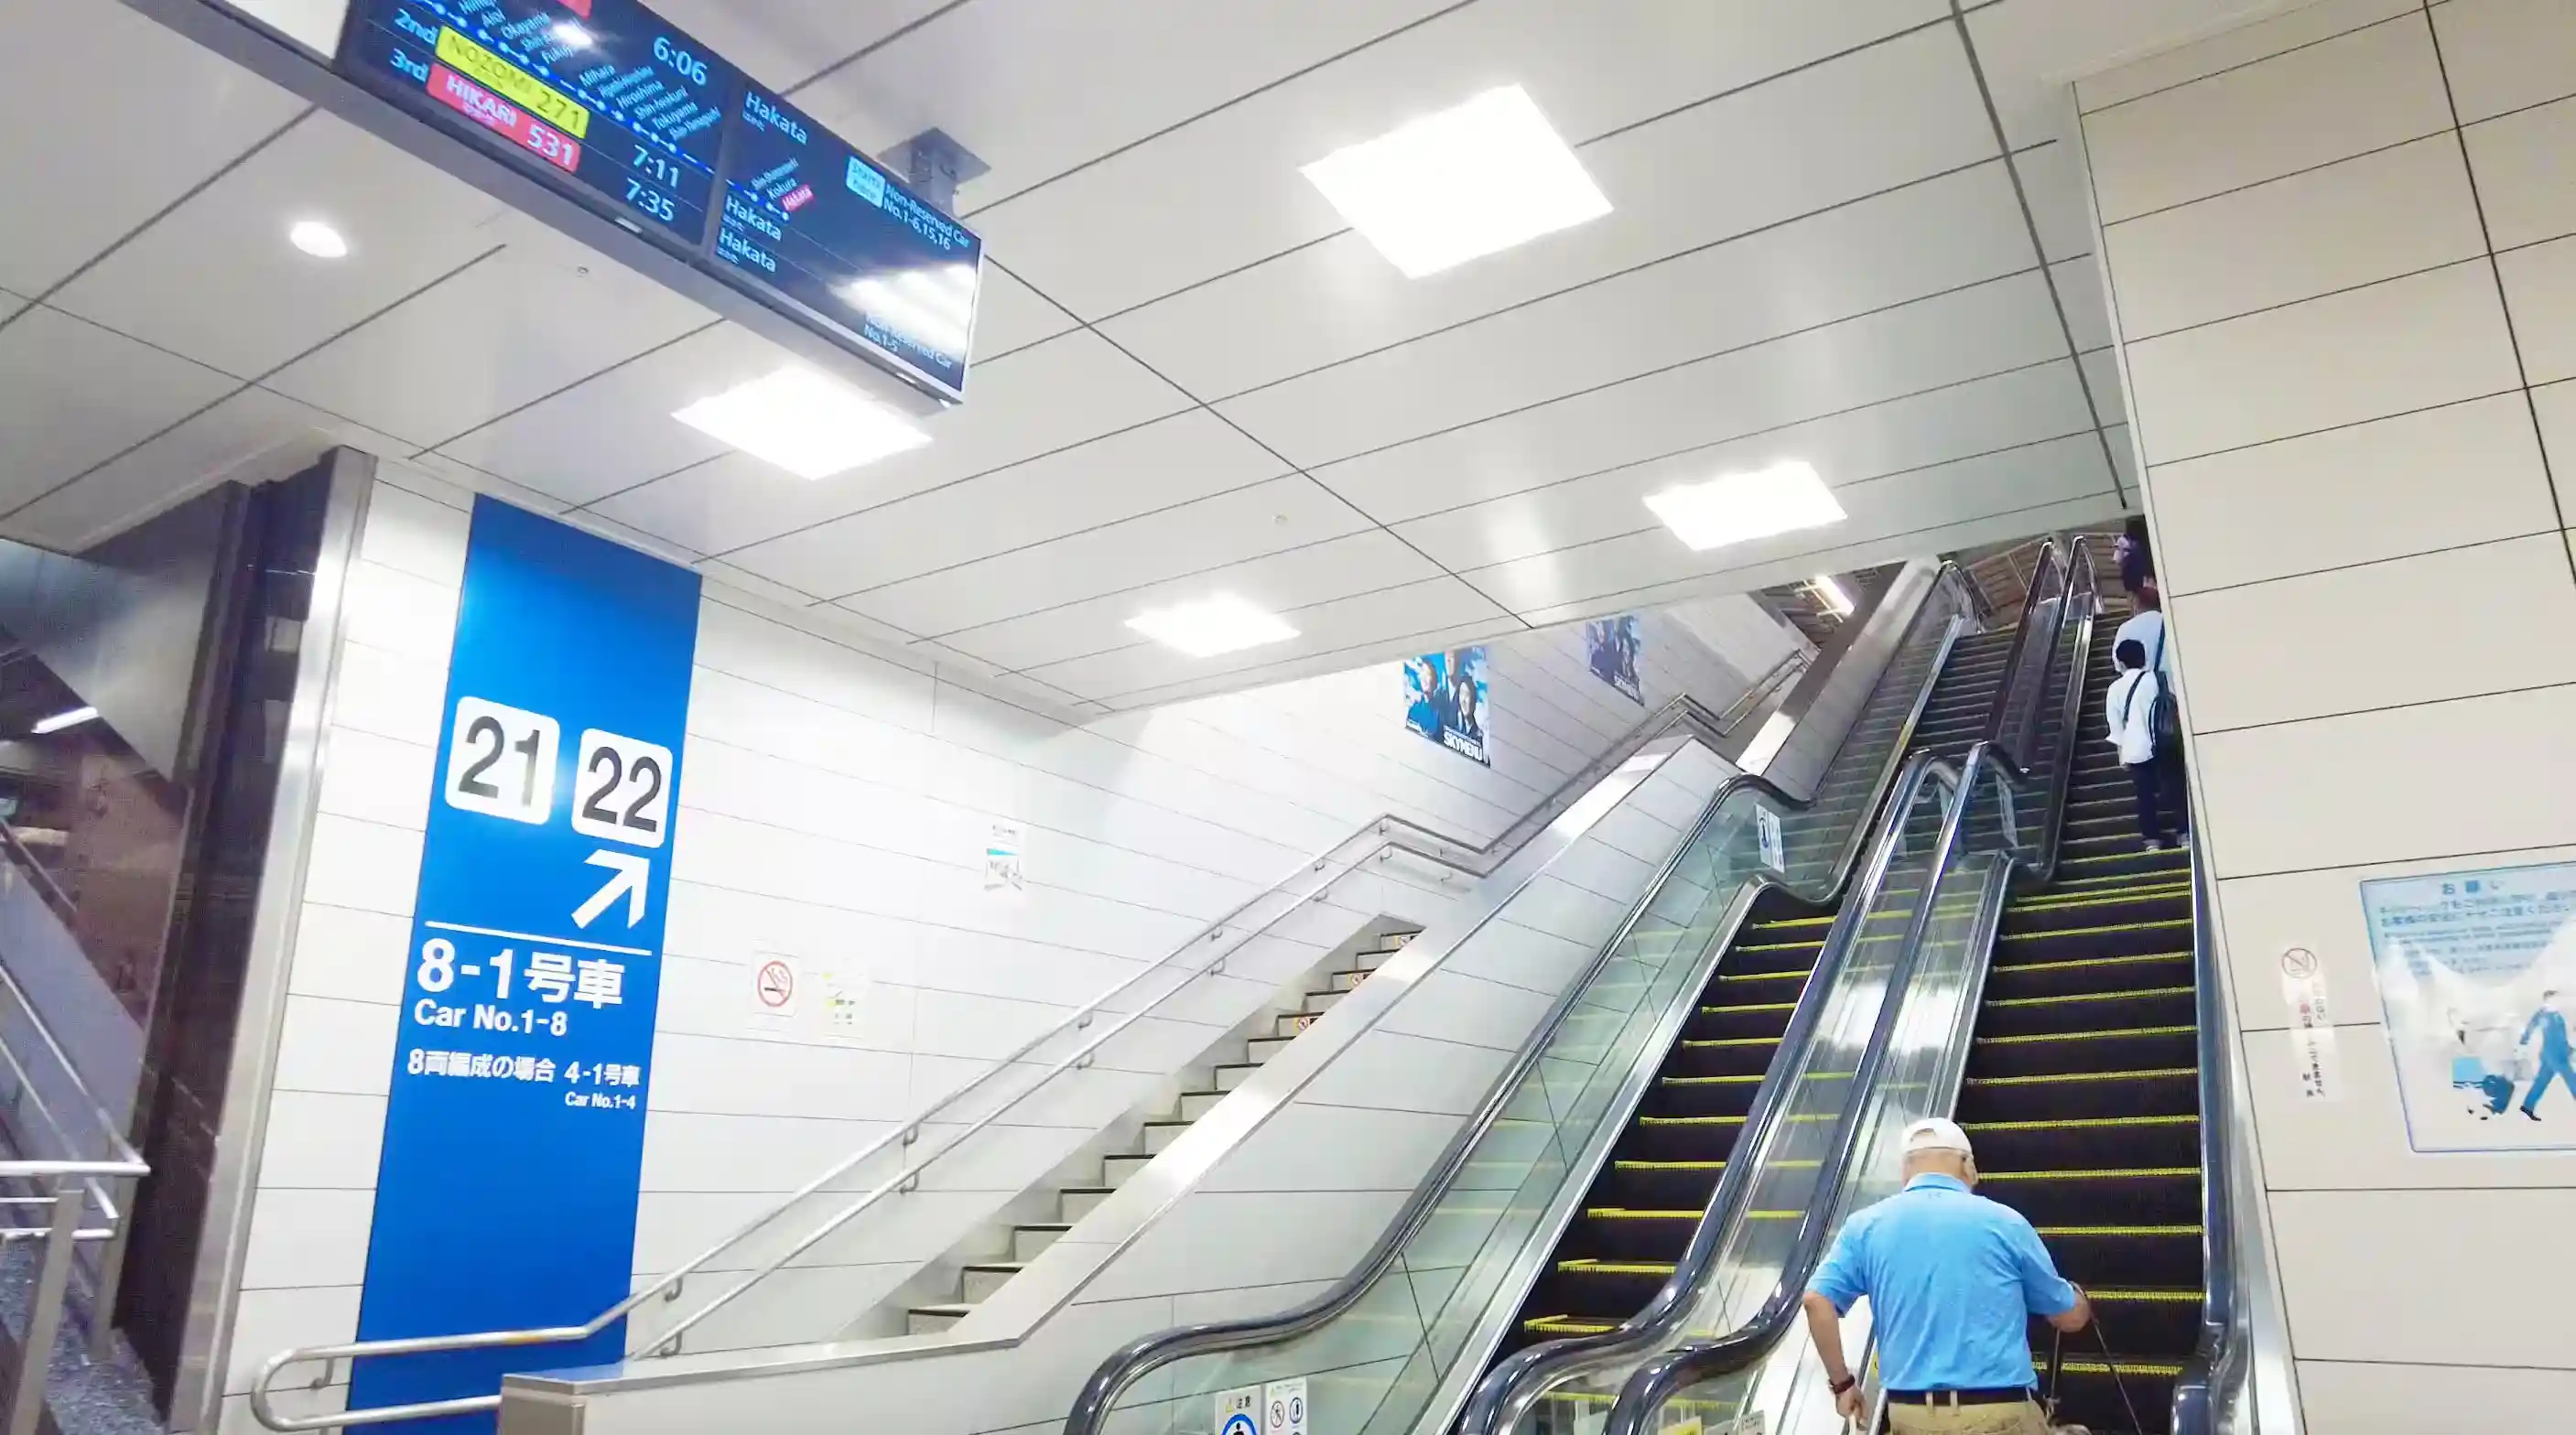 新大阪駅の21-22番線乗り場へ向かうエスカレーターと階段